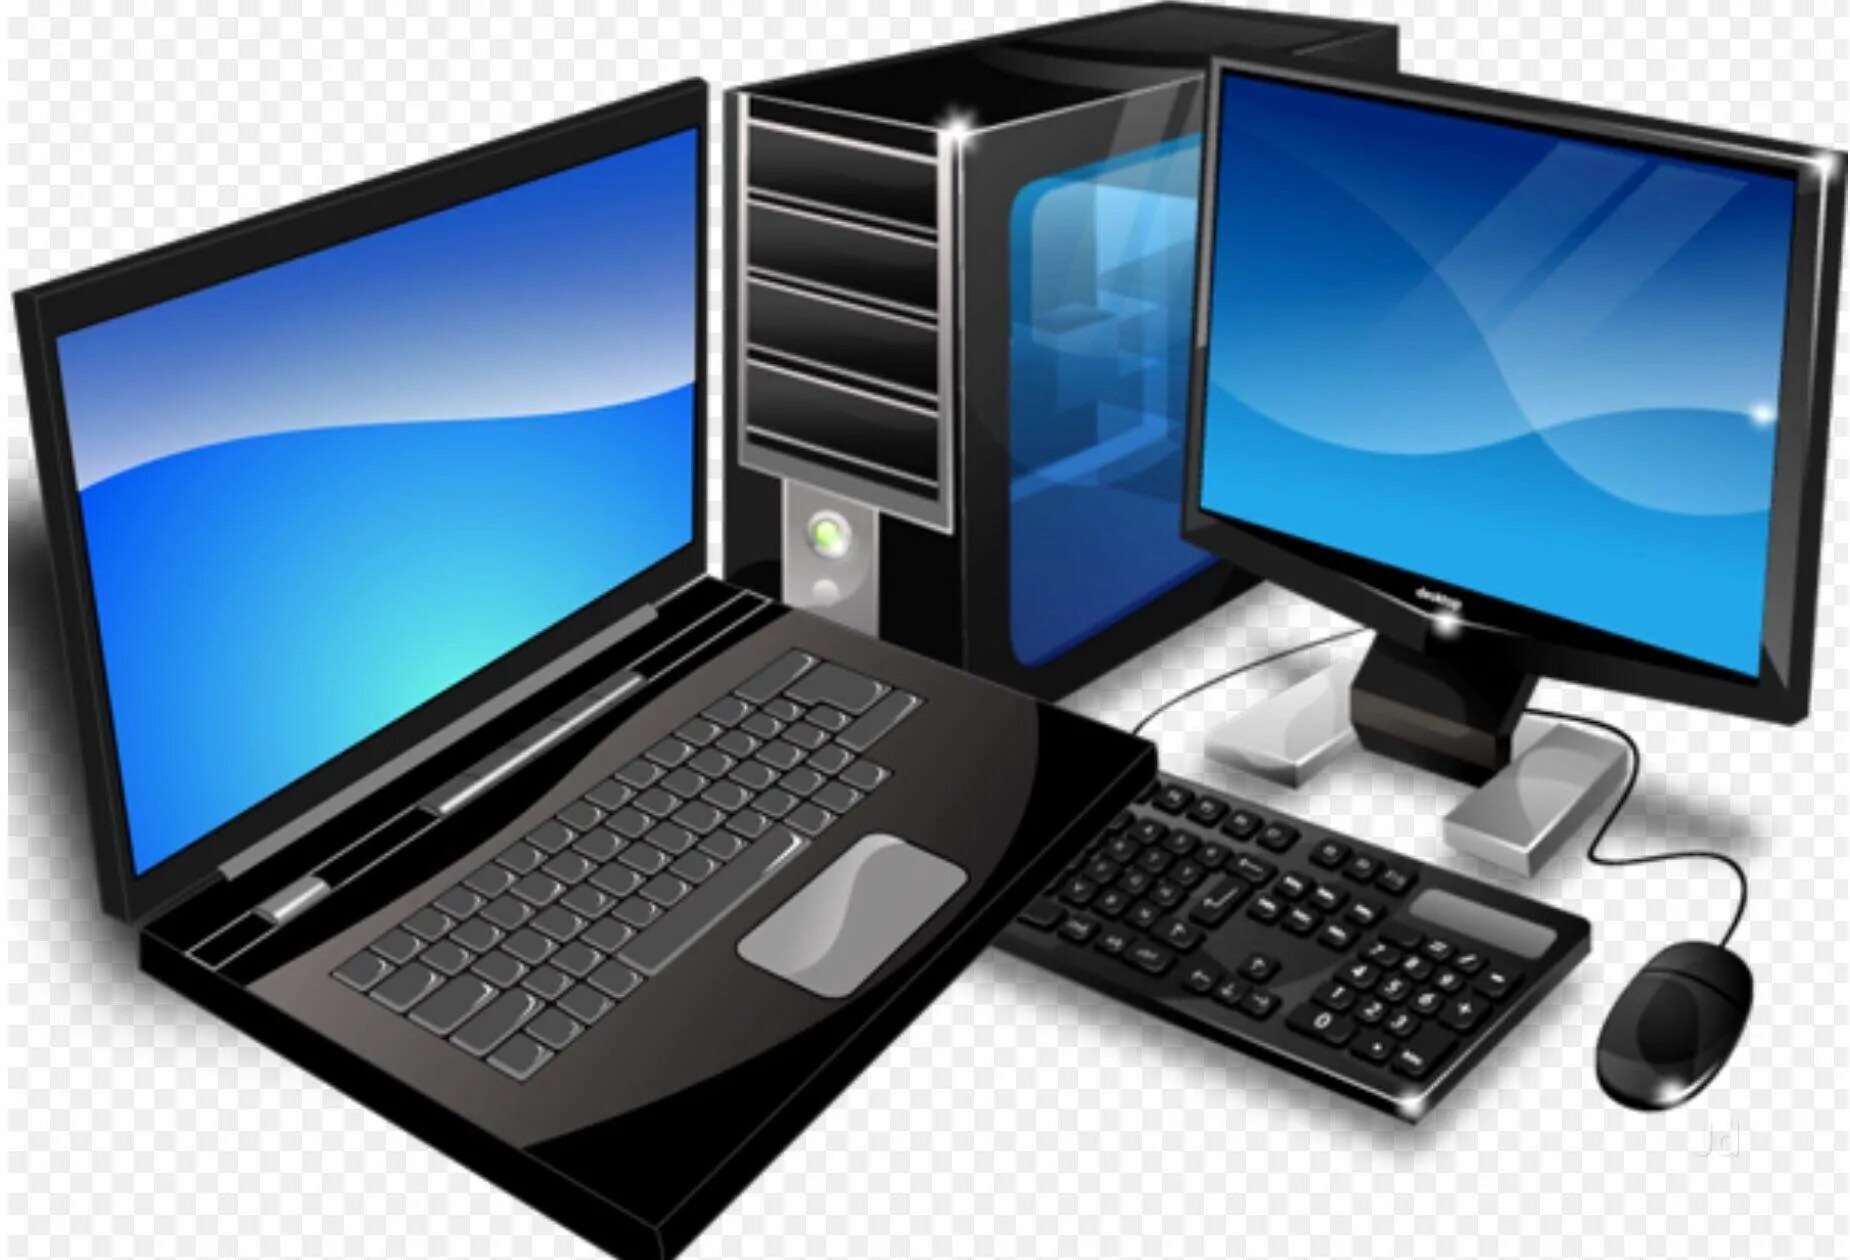 Computer com. Компьютерная техника. Компьютерное оборудование. ПК И ноутбук. Компьютеры и оргтехника.